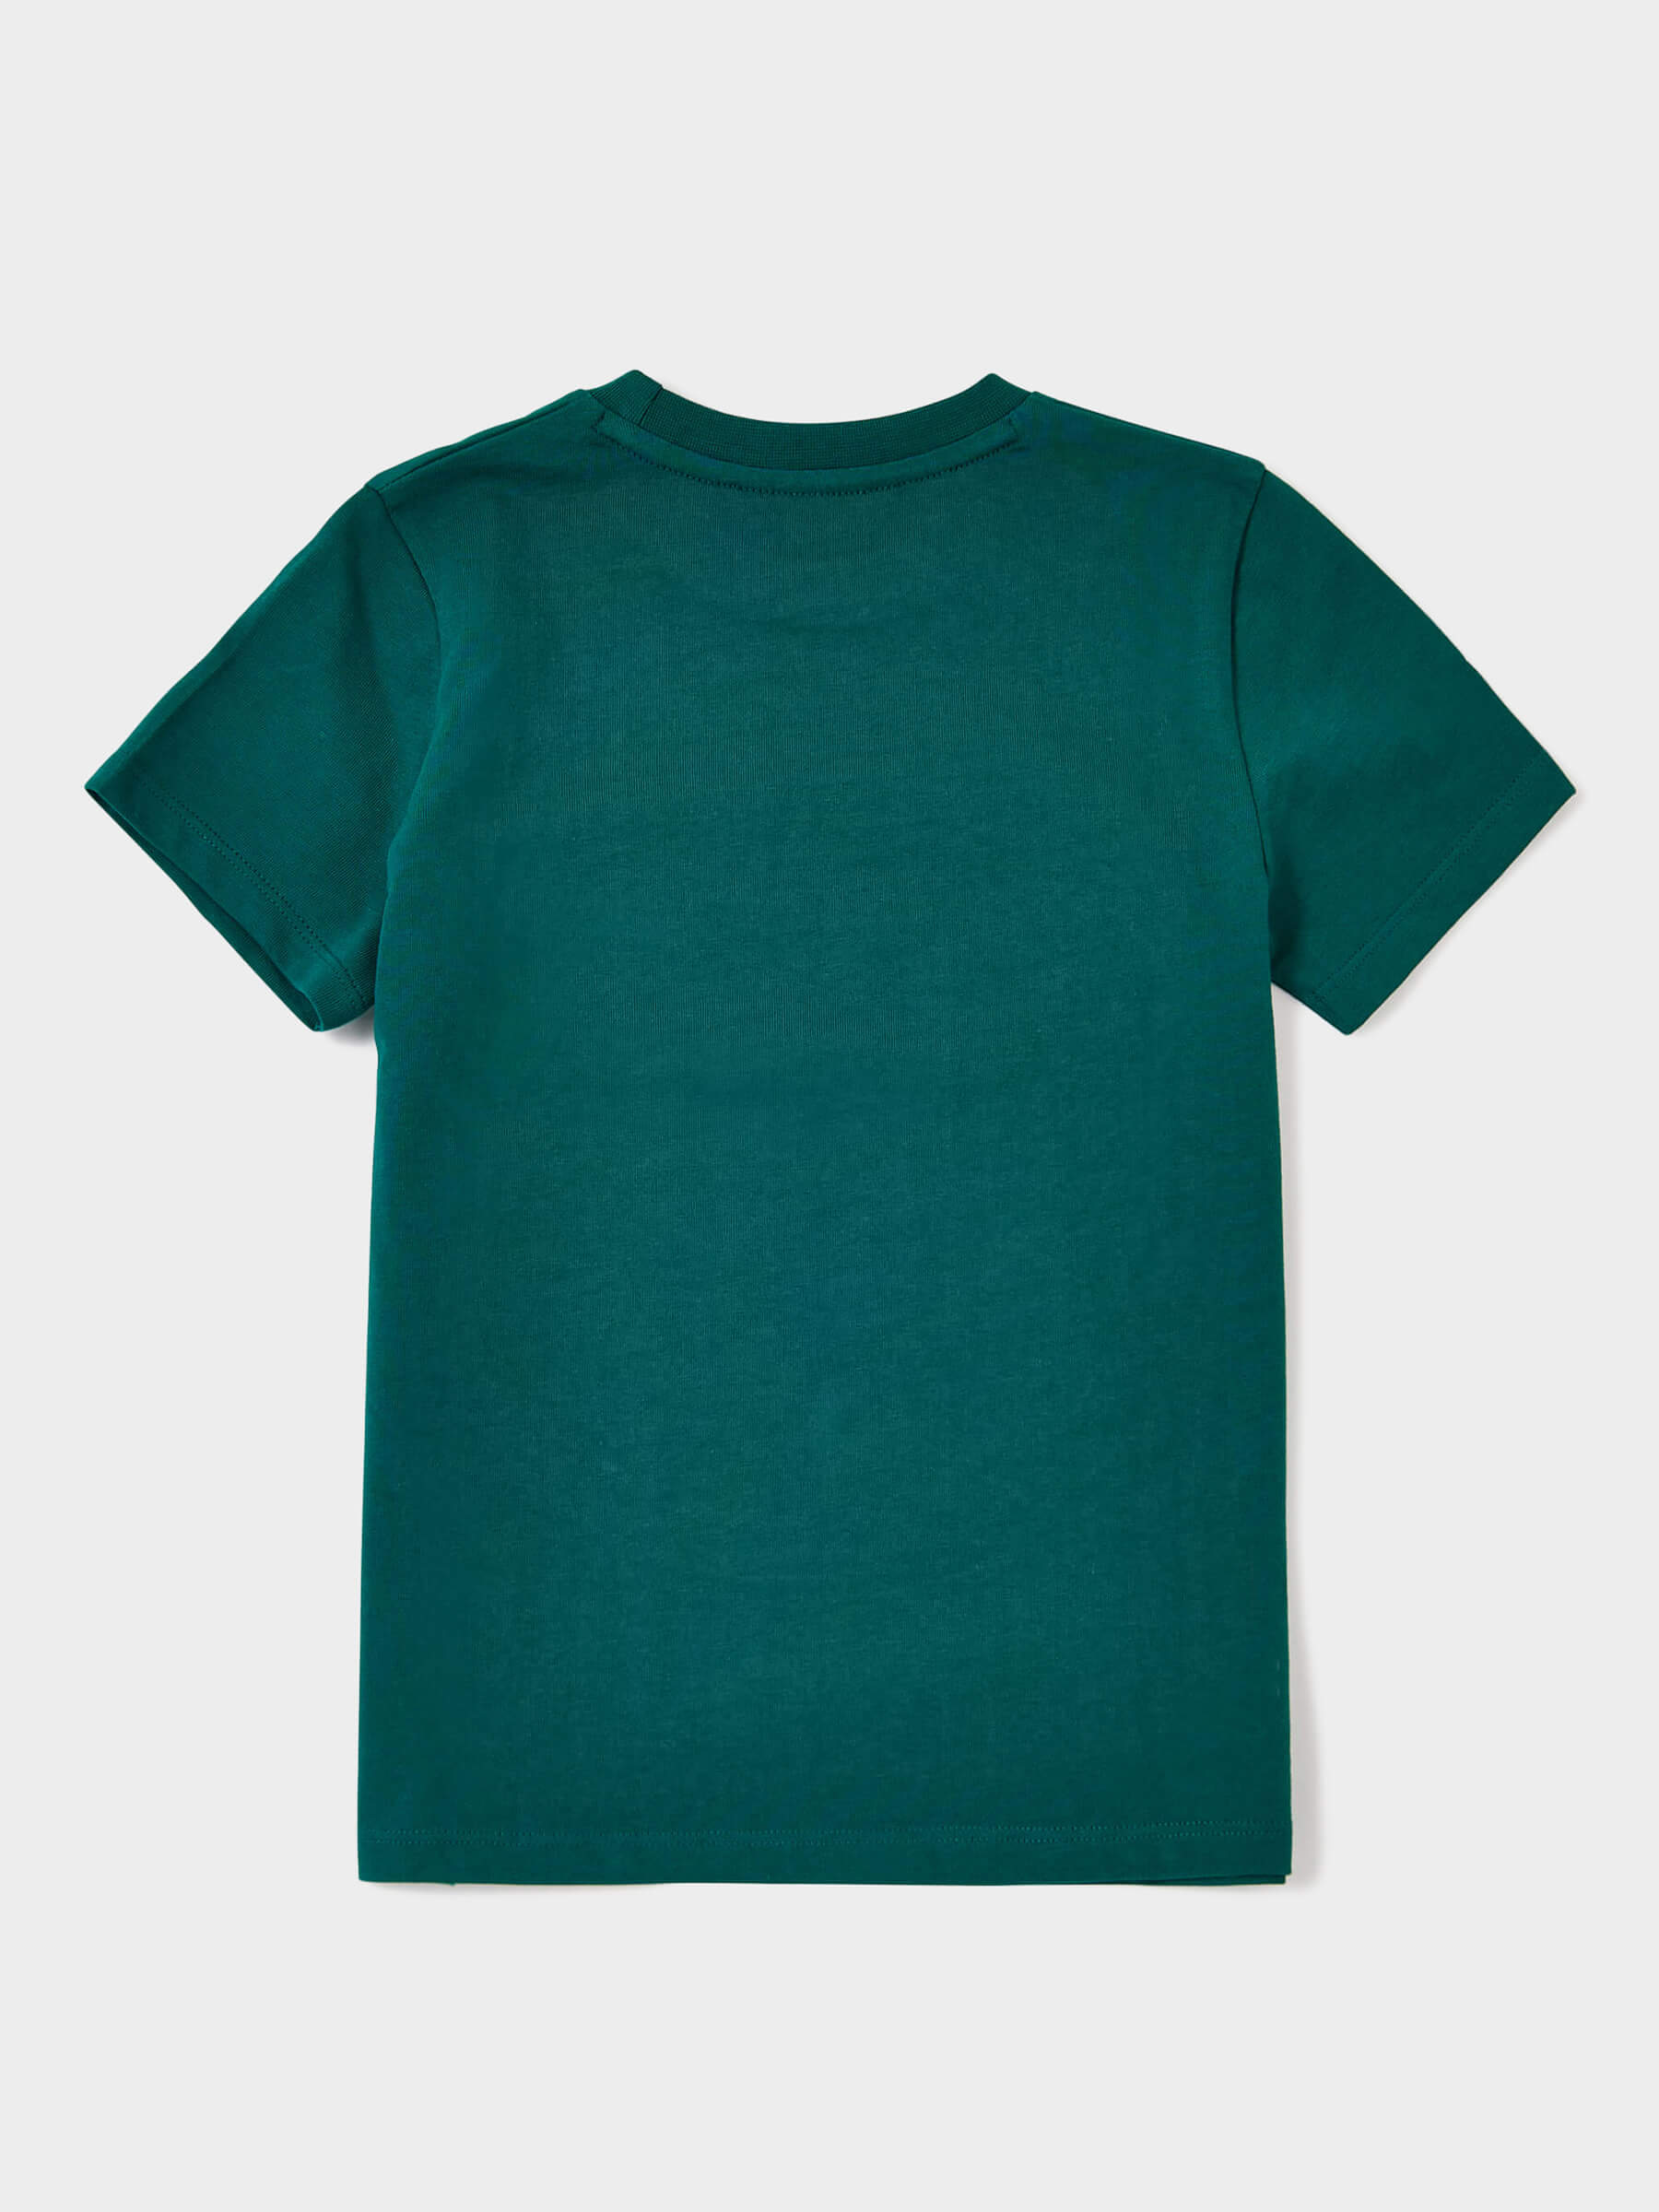 Avon Embossed T-Shirt